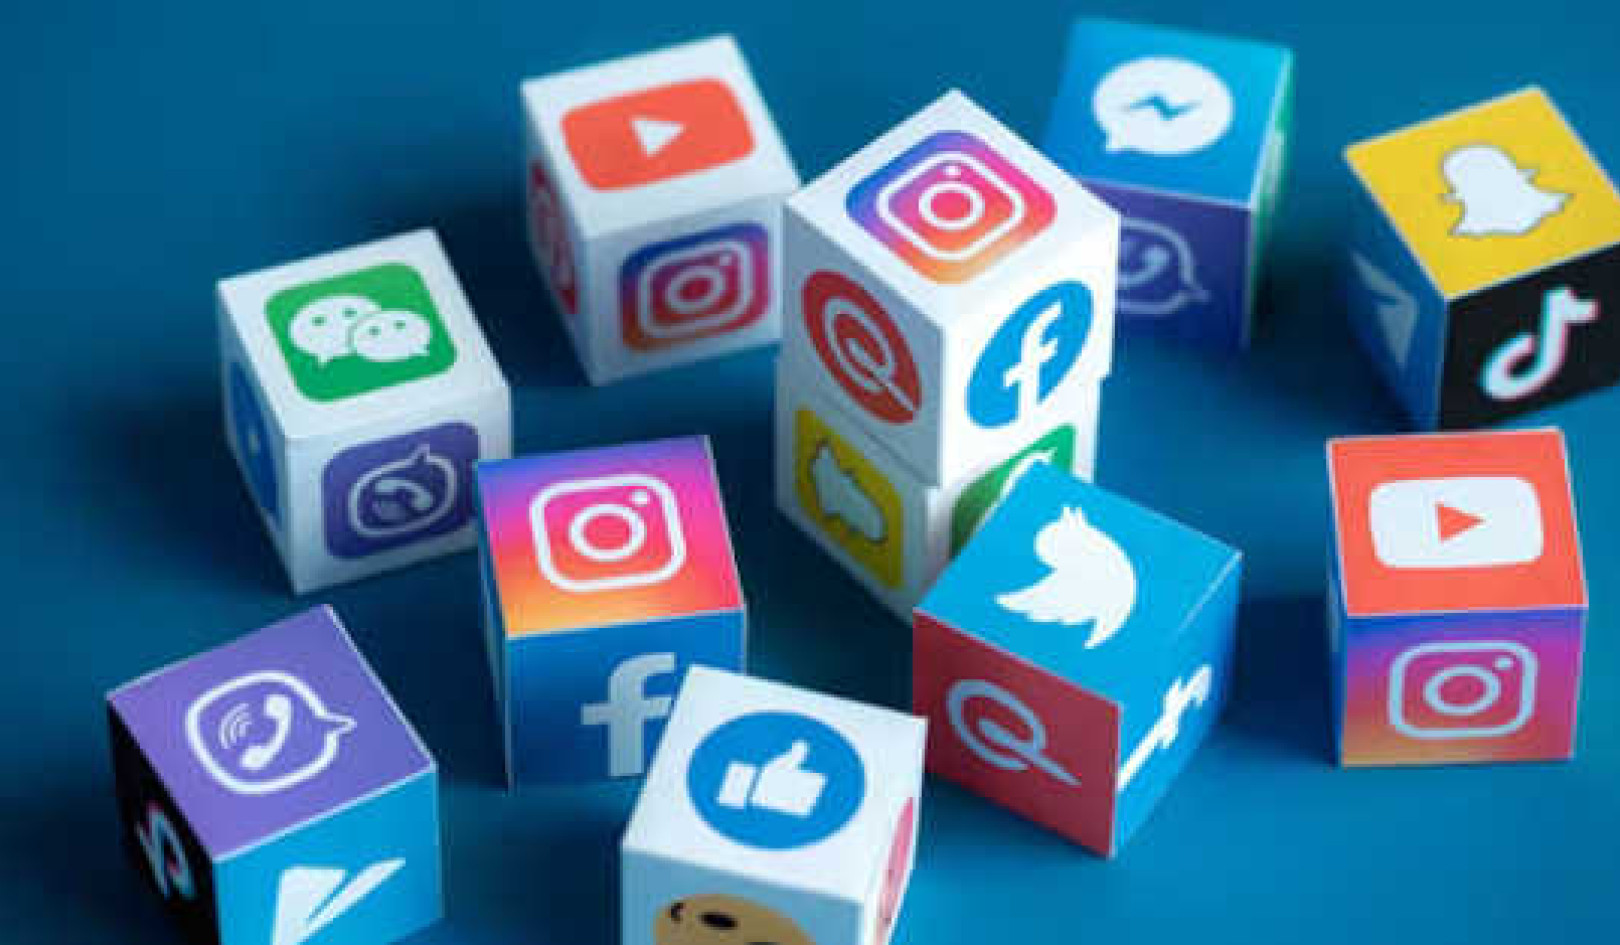 Hoe u uzelf ertoe kunt brengen dat sociale media-account te verwijderen